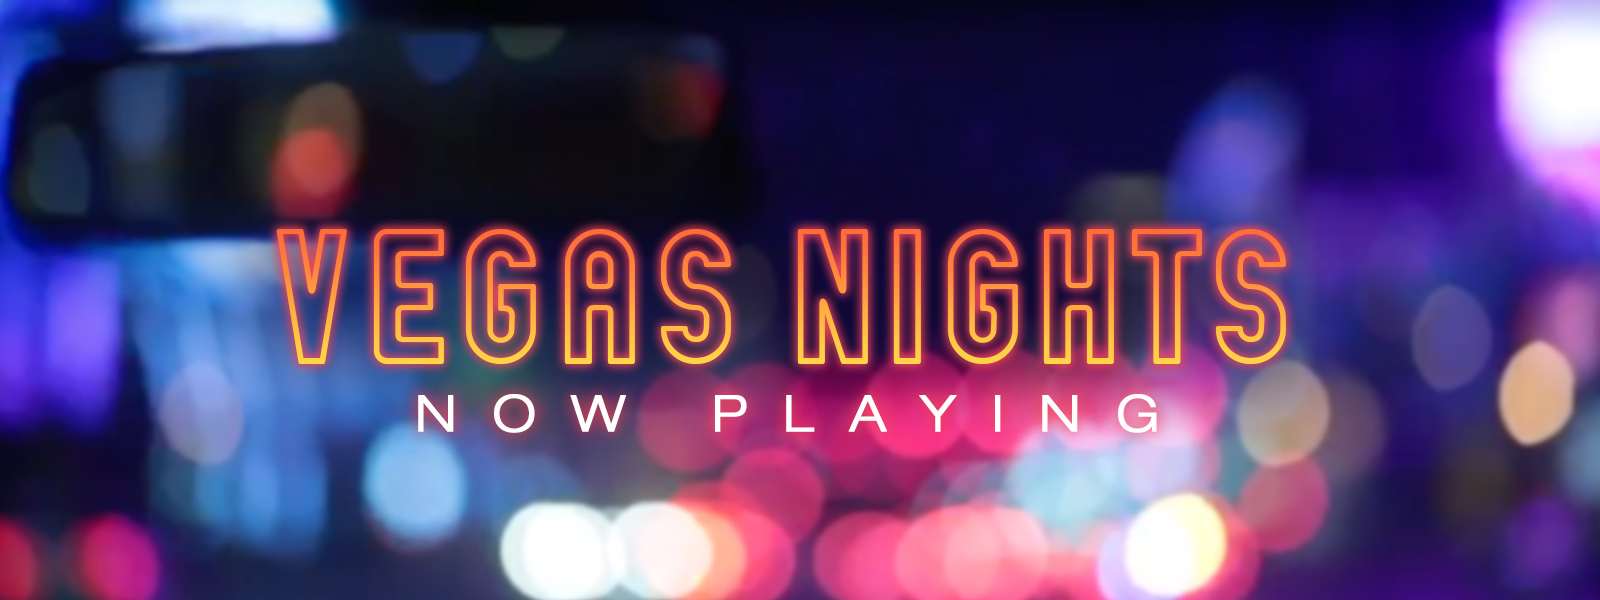 Vegas Nights: Trailer